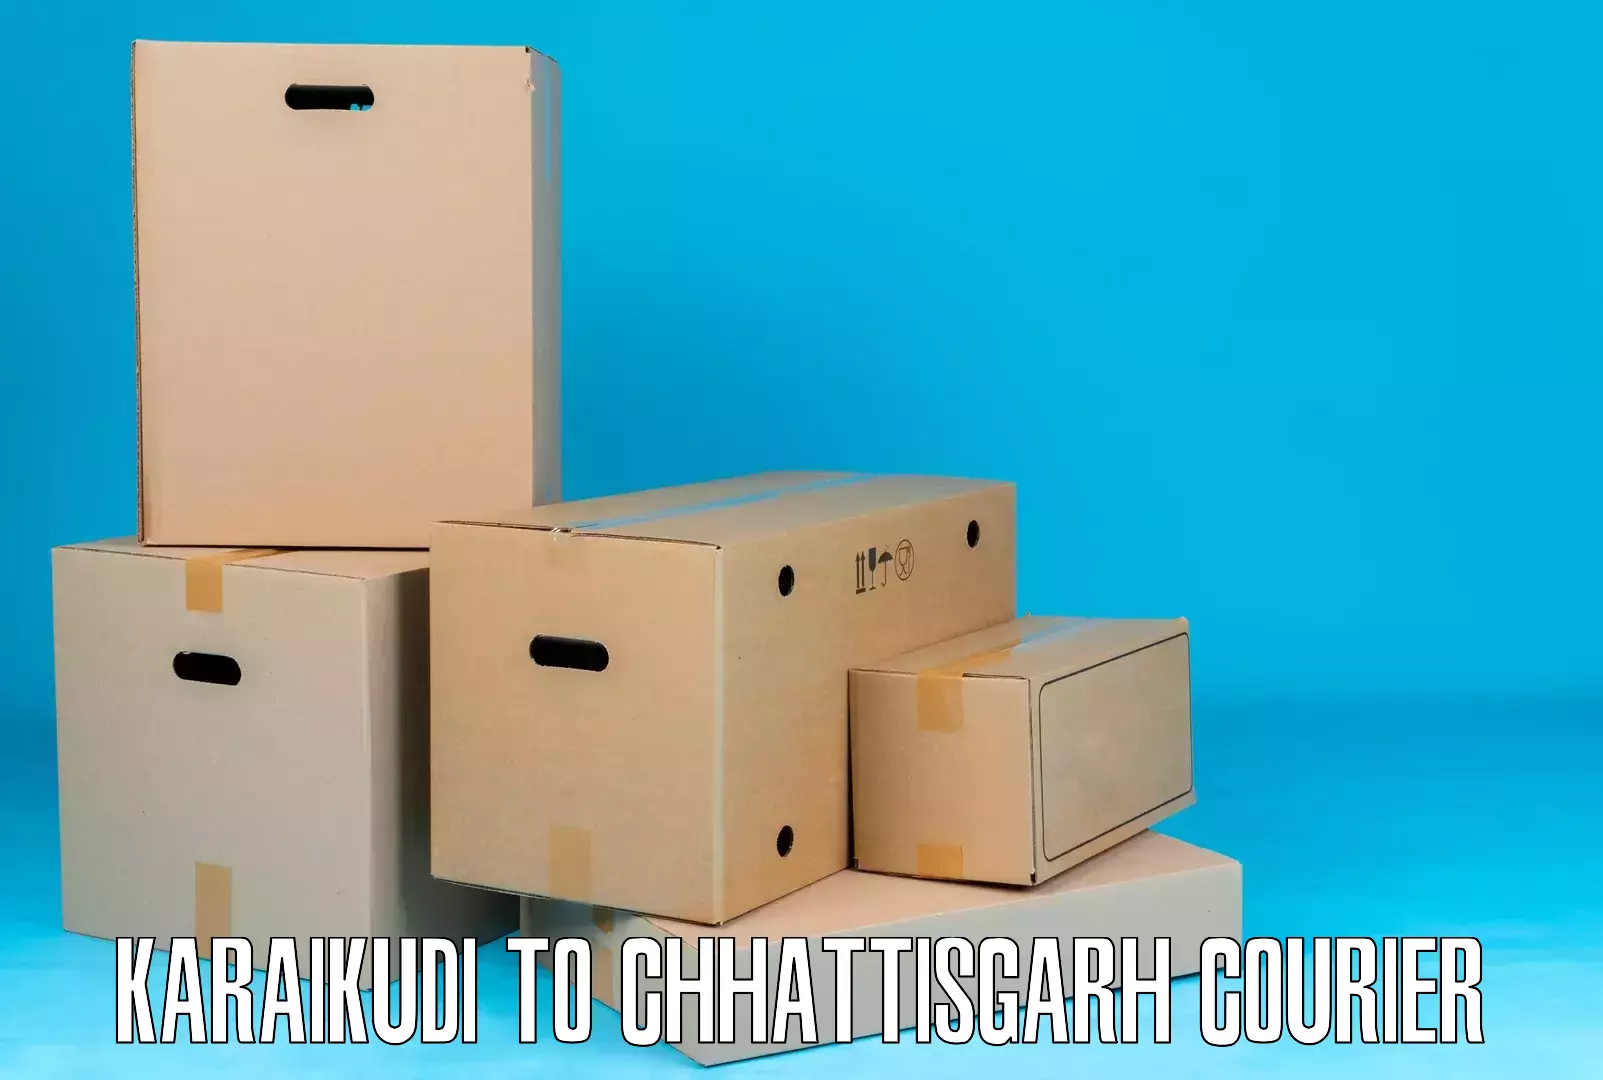 Cargo courier service Karaikudi to Pratappur